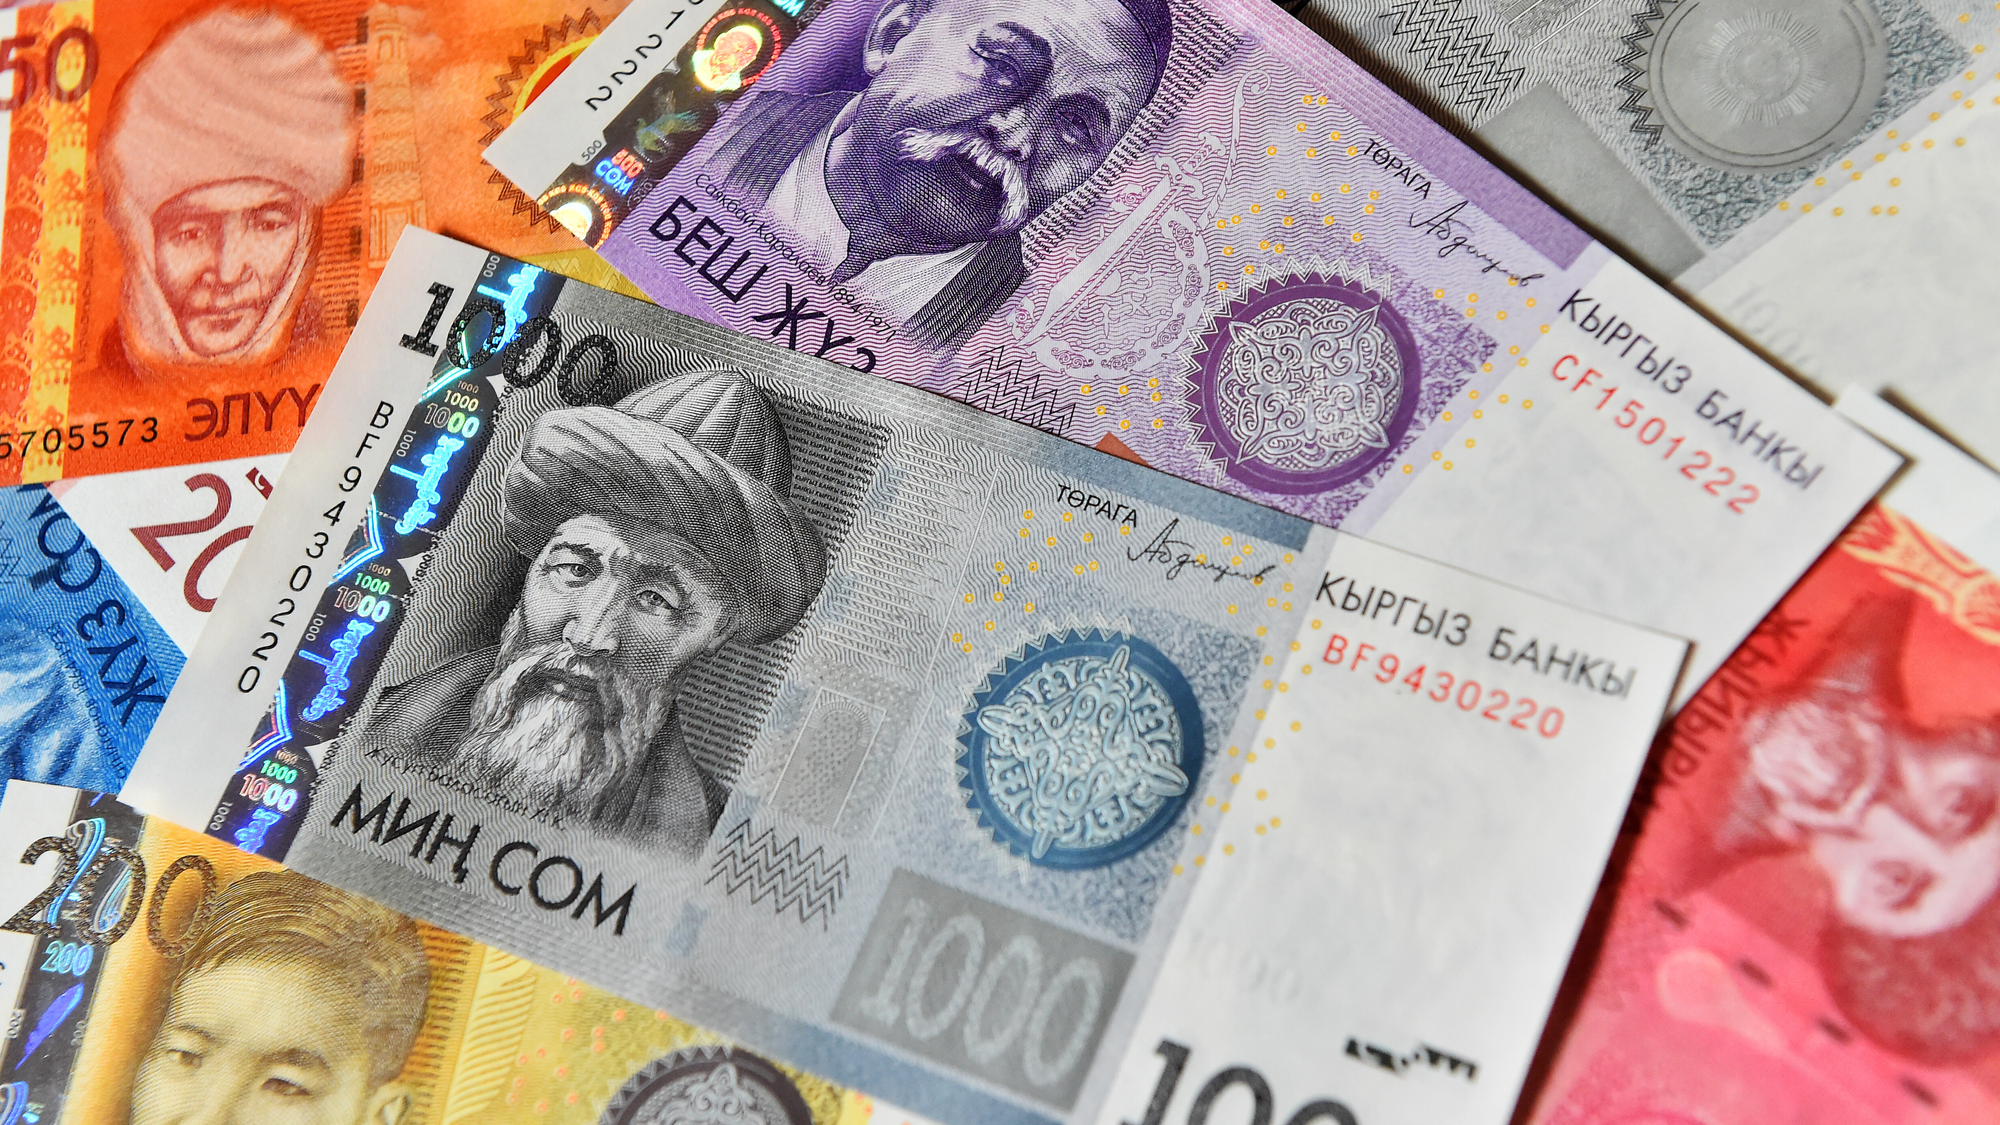 В Кыргызстане предлагают ввести штрафы за сбор денег в школах – до 60 тысяч сомов